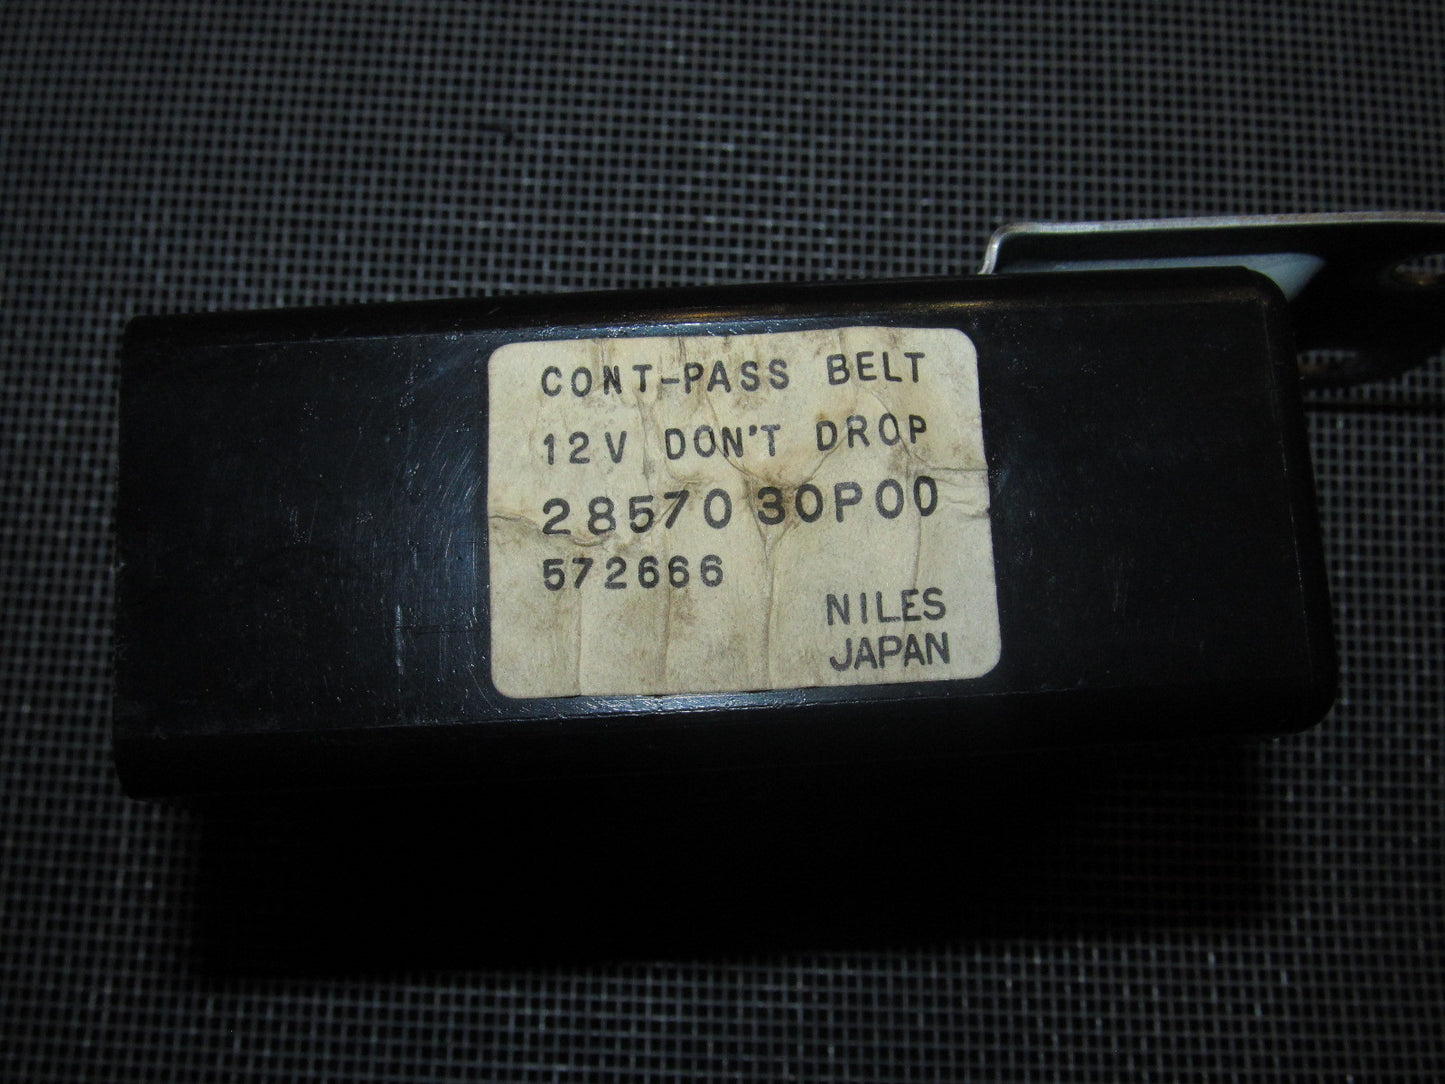 90 91 92 93 94 95 96  Nissan 300zx Cont-Pass Belt Unit 28570 30P00